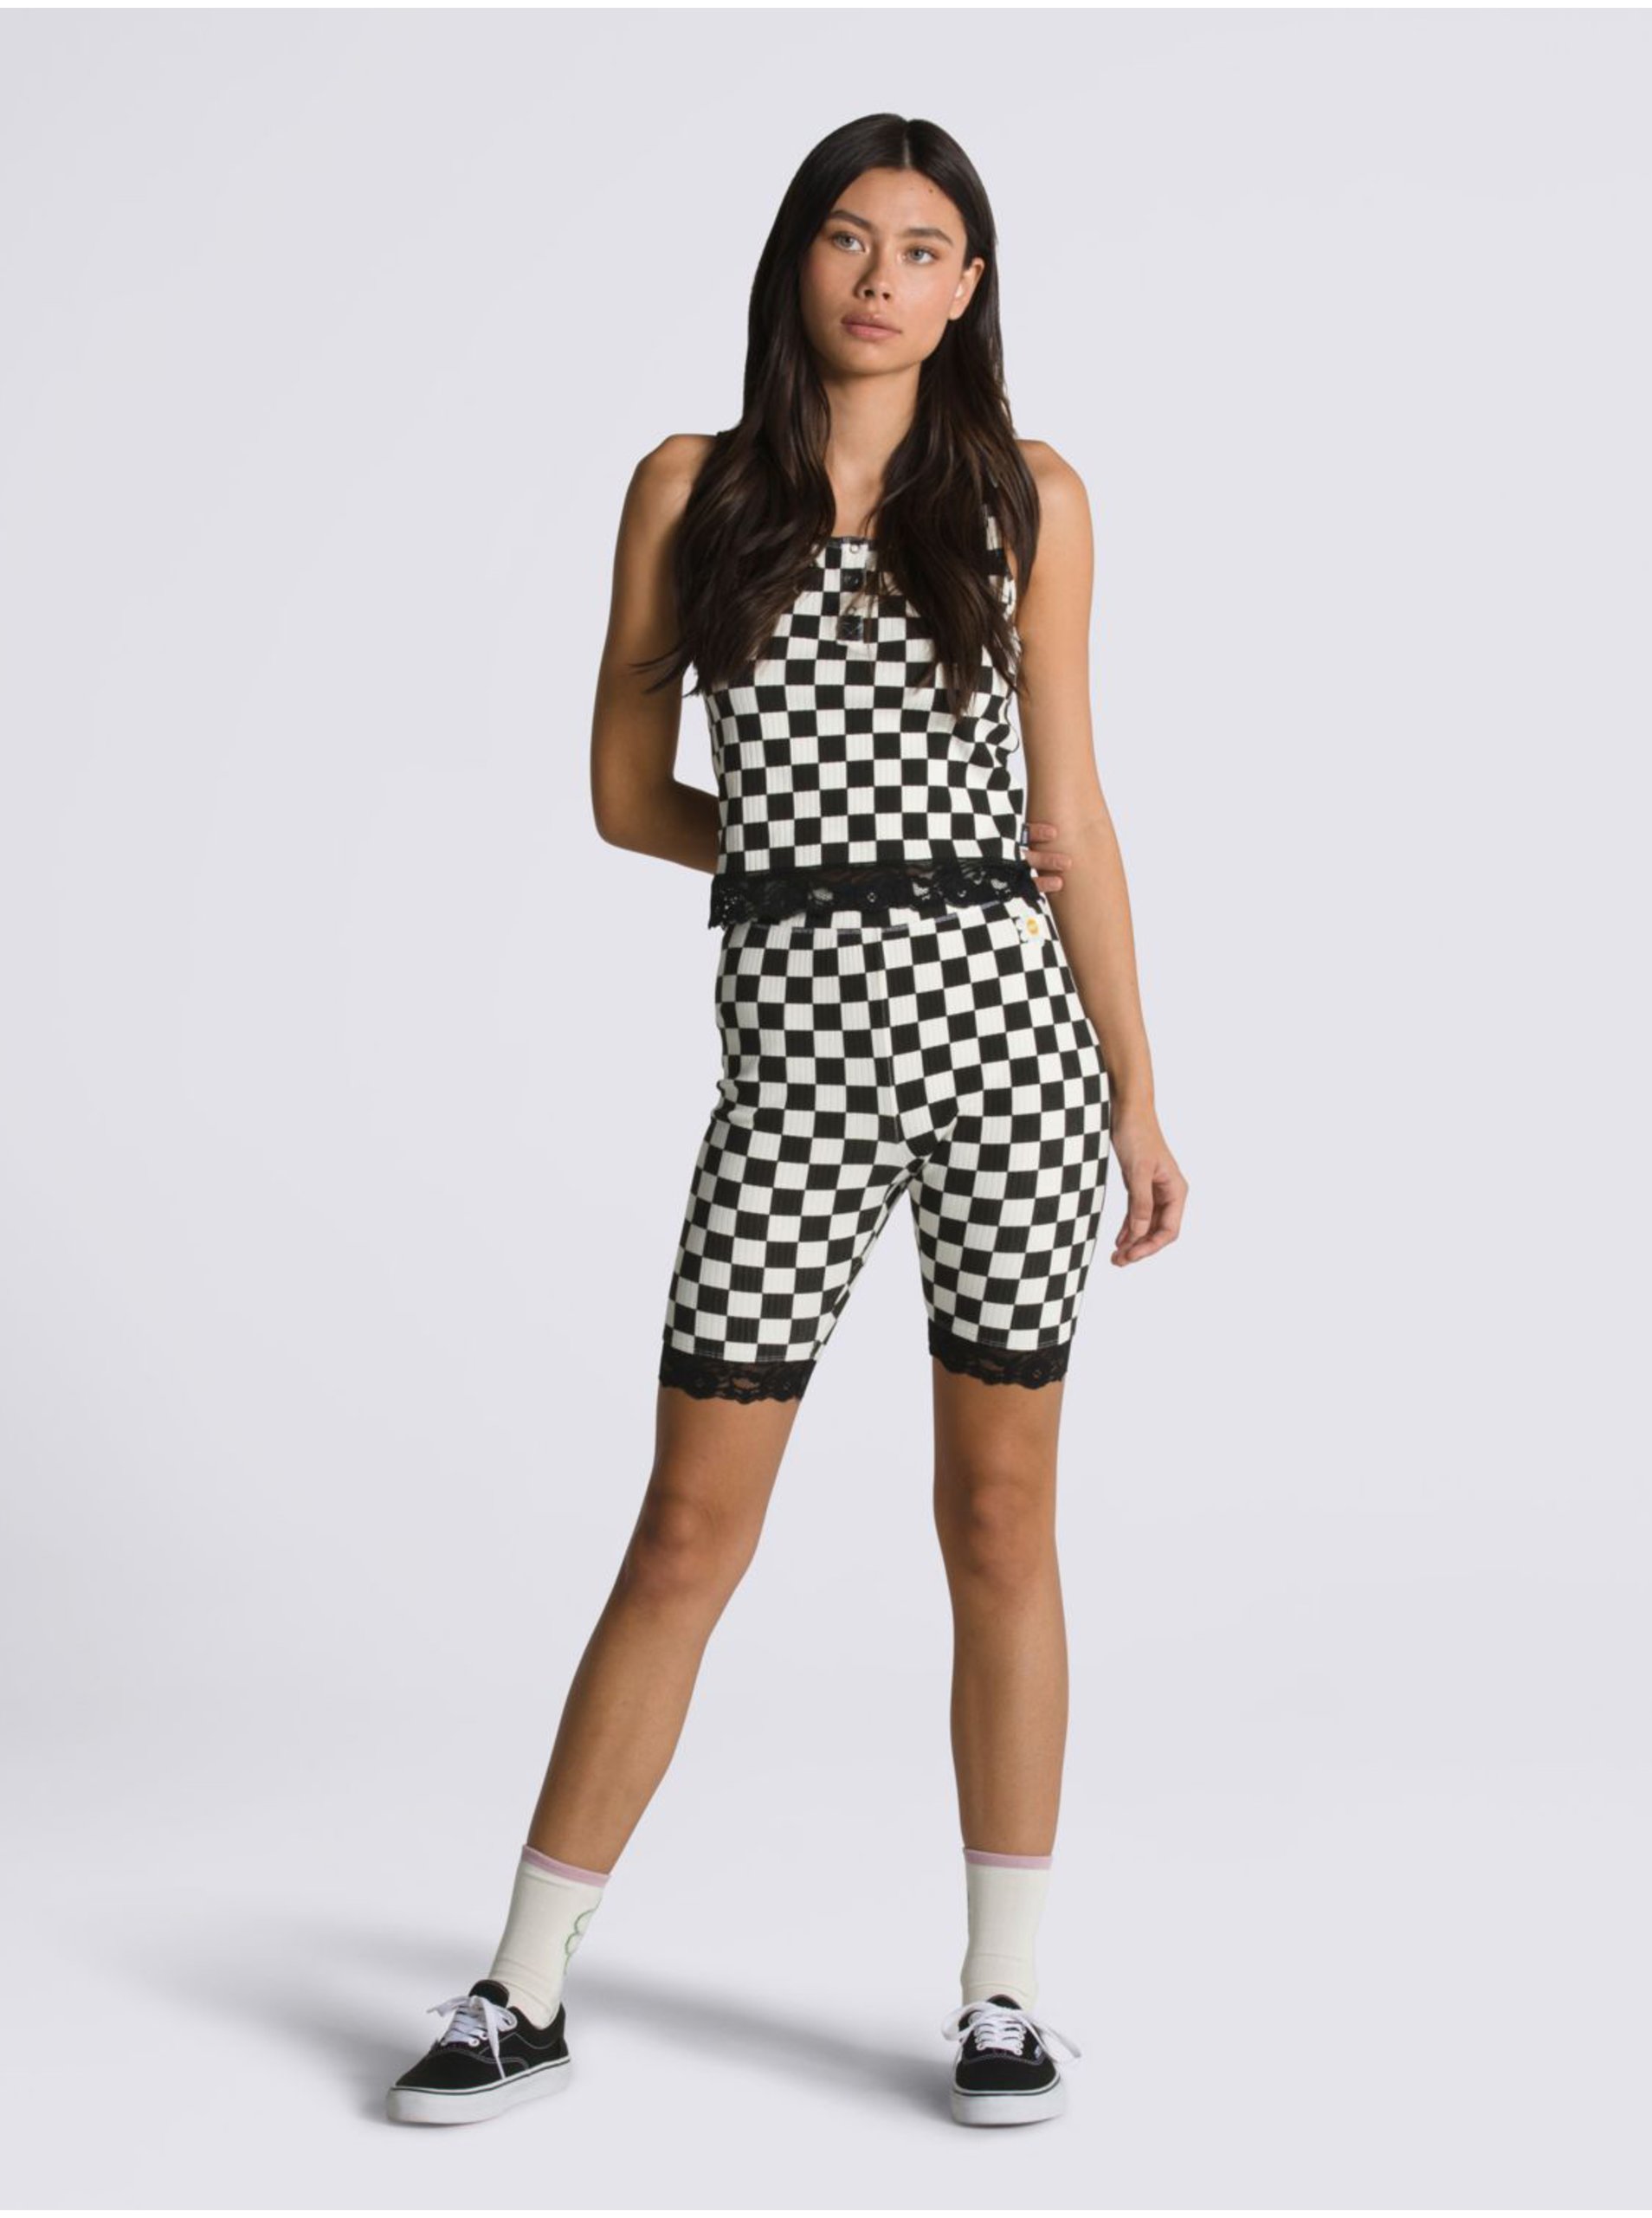 Black & White Checkered Short Leggings VANS - Ladies